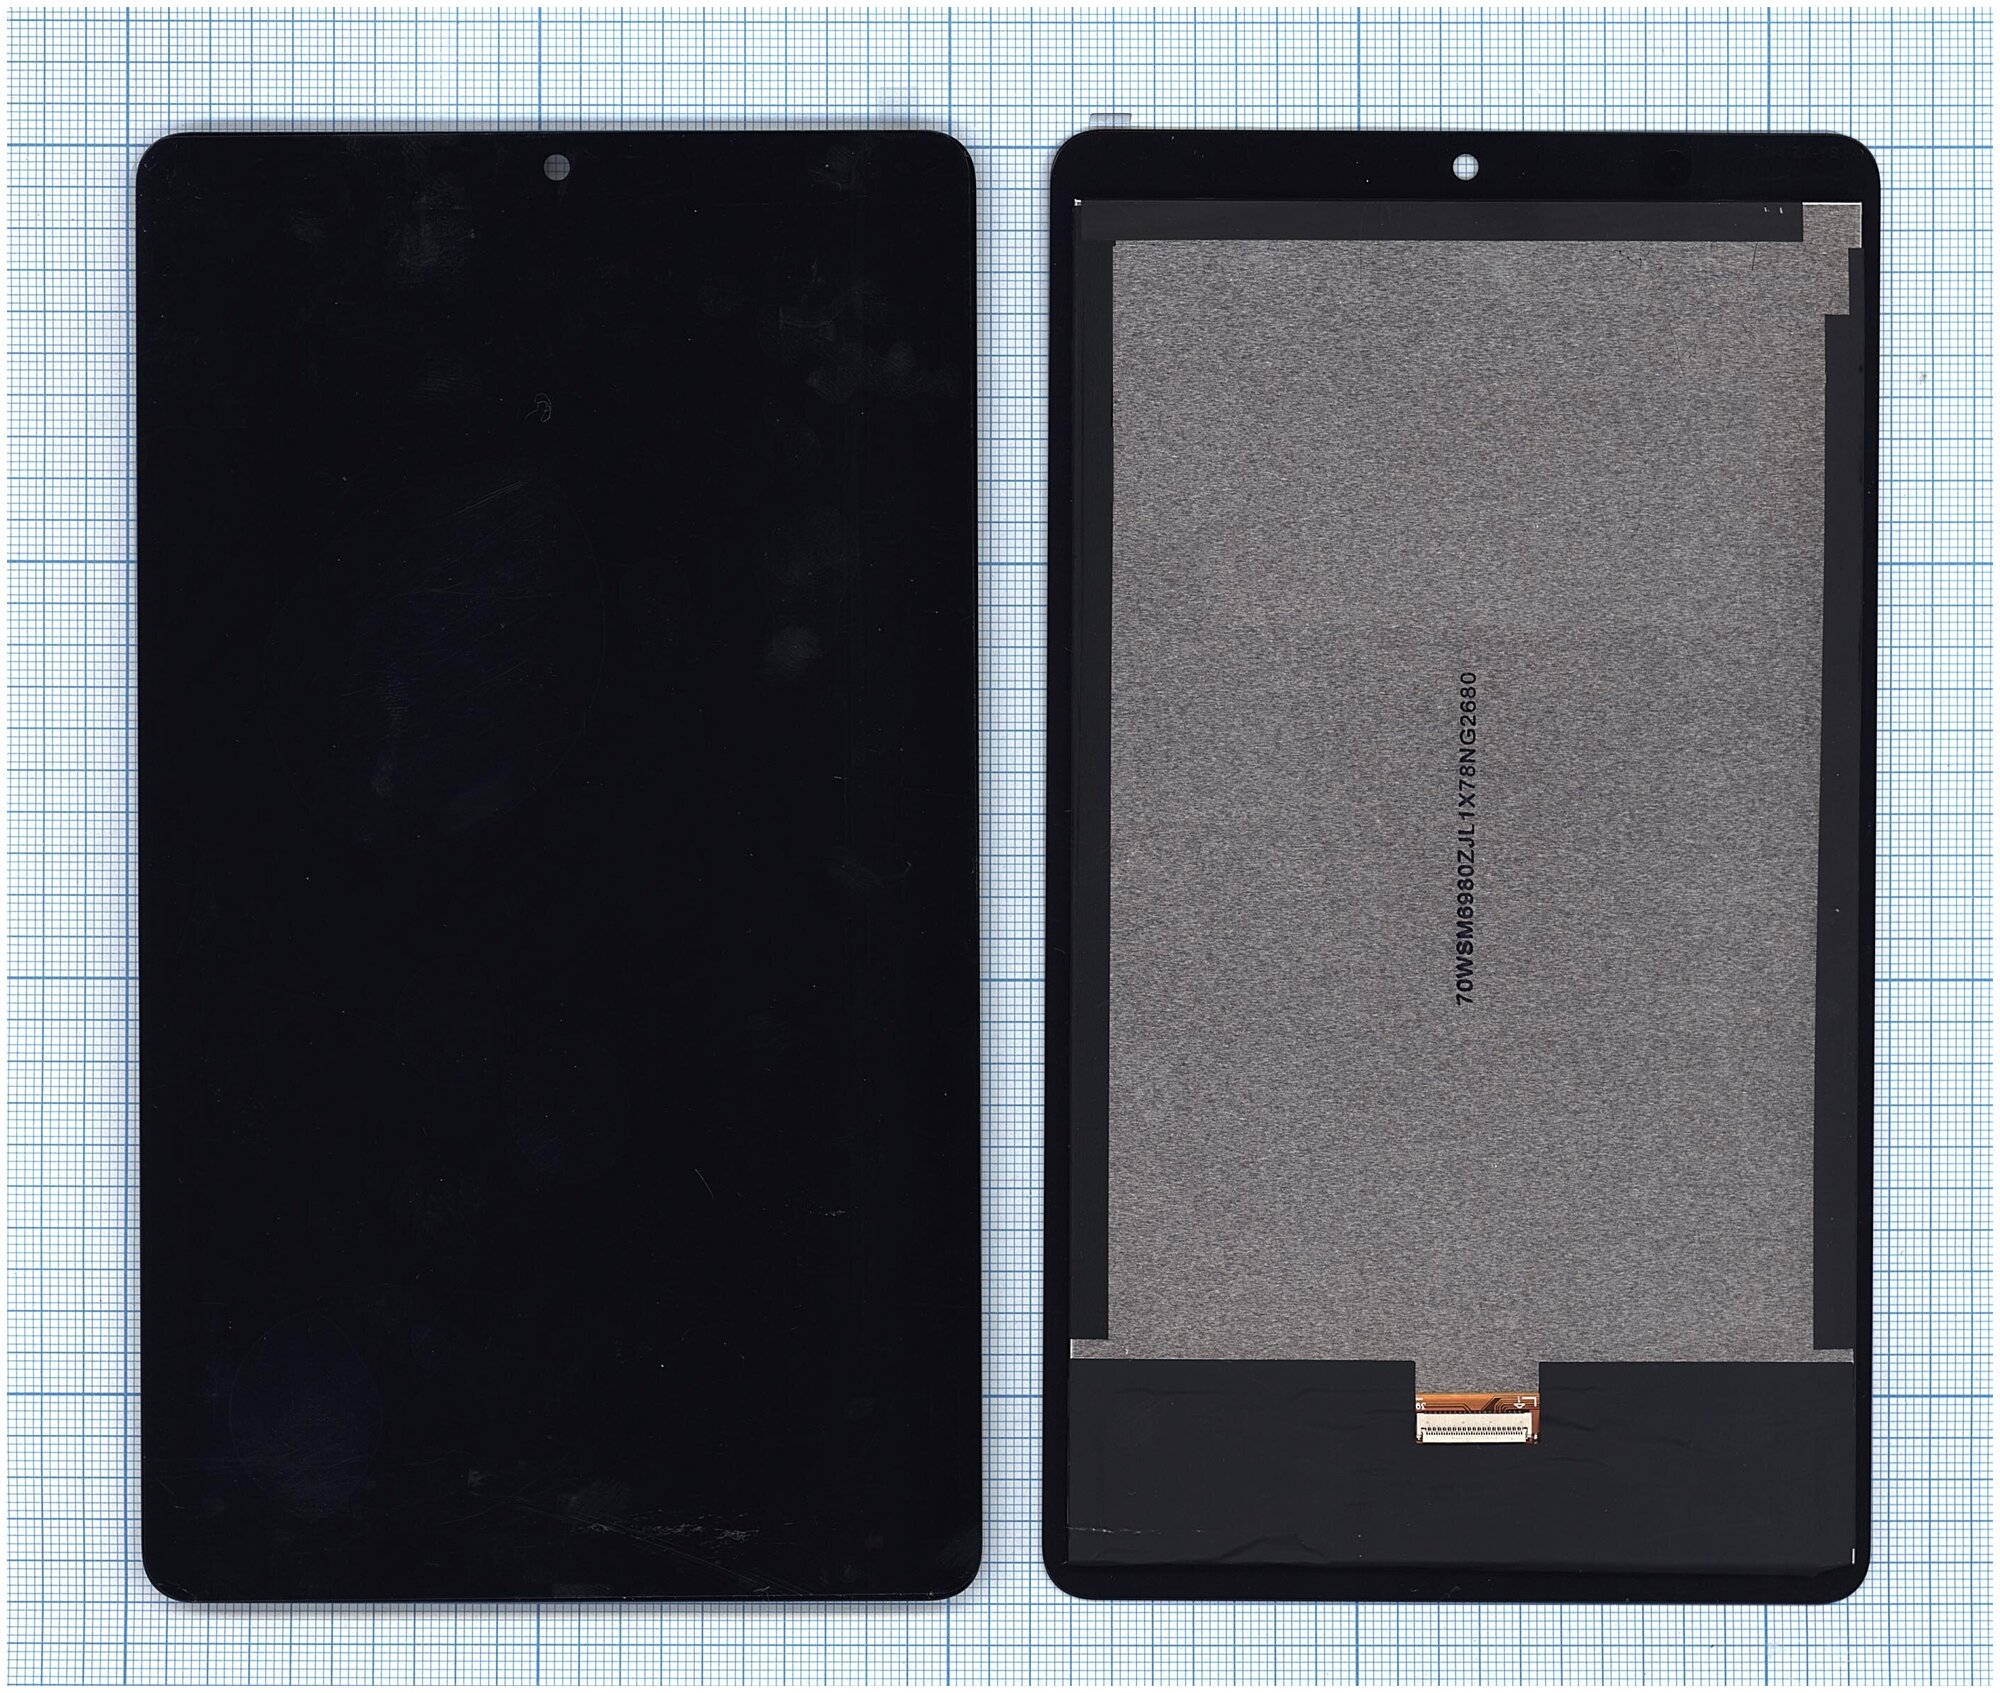 Модуль (матрица + тачскрин) для Huawei MediaPad T3 7.0 Wi-Fi черный